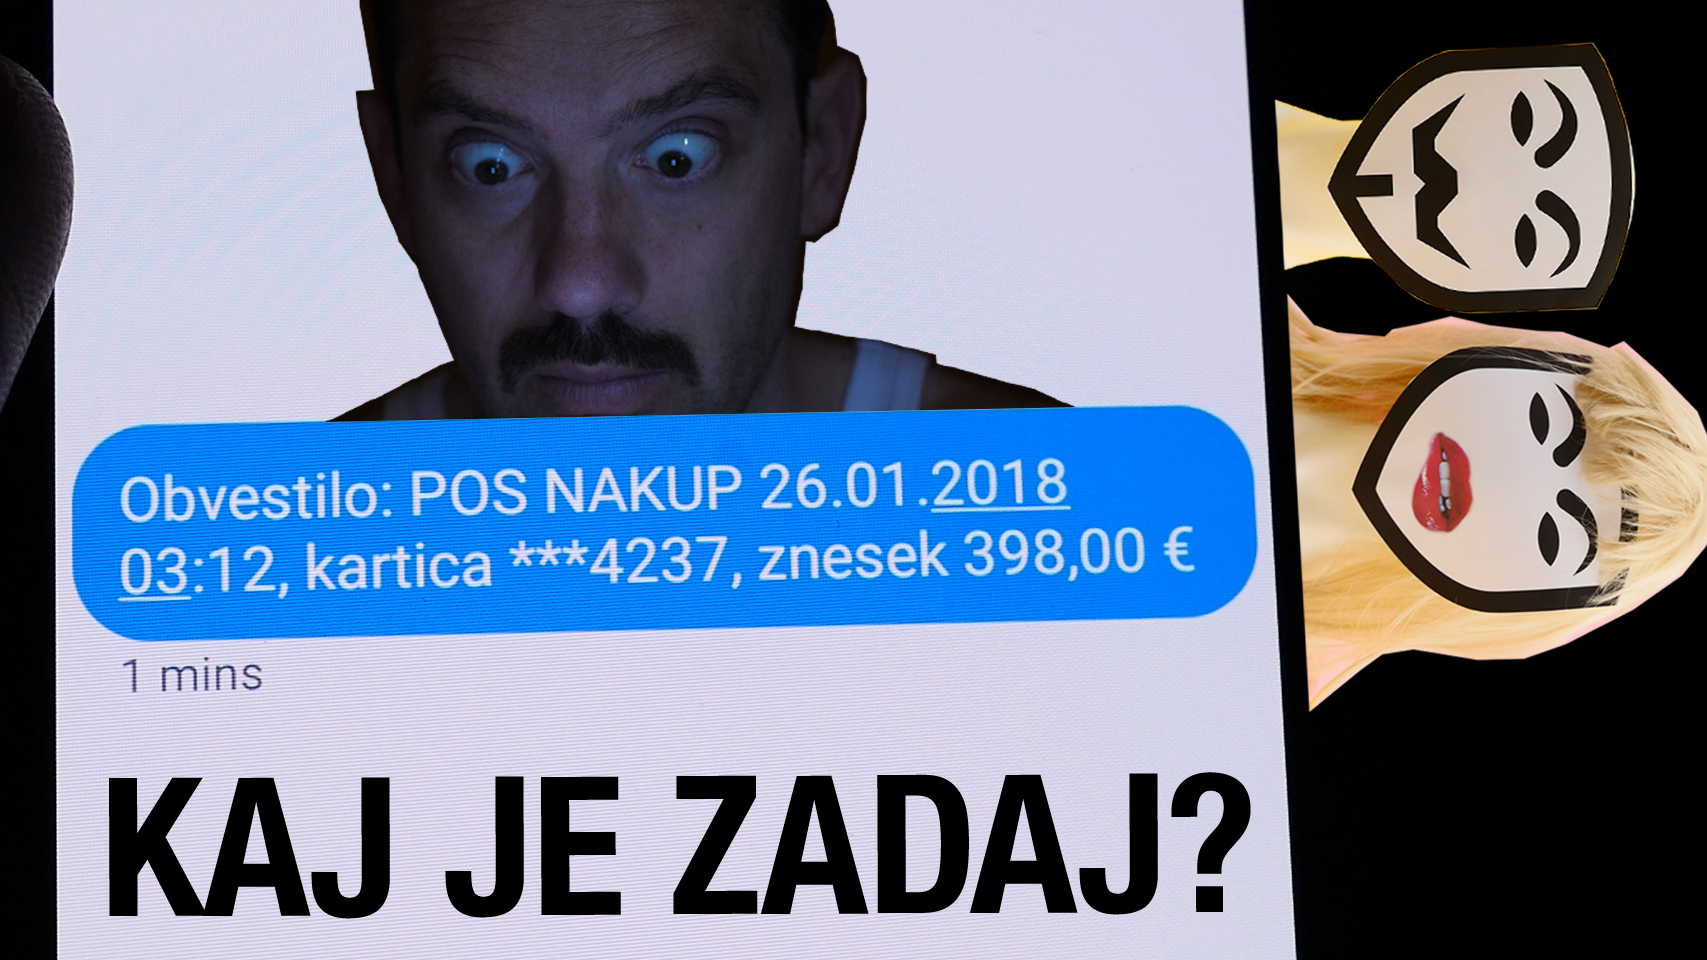 Naslovnica videa, na kateri je začuden obraz Jožeta, SMS o transakciji in izrez moškega in ženske z masko